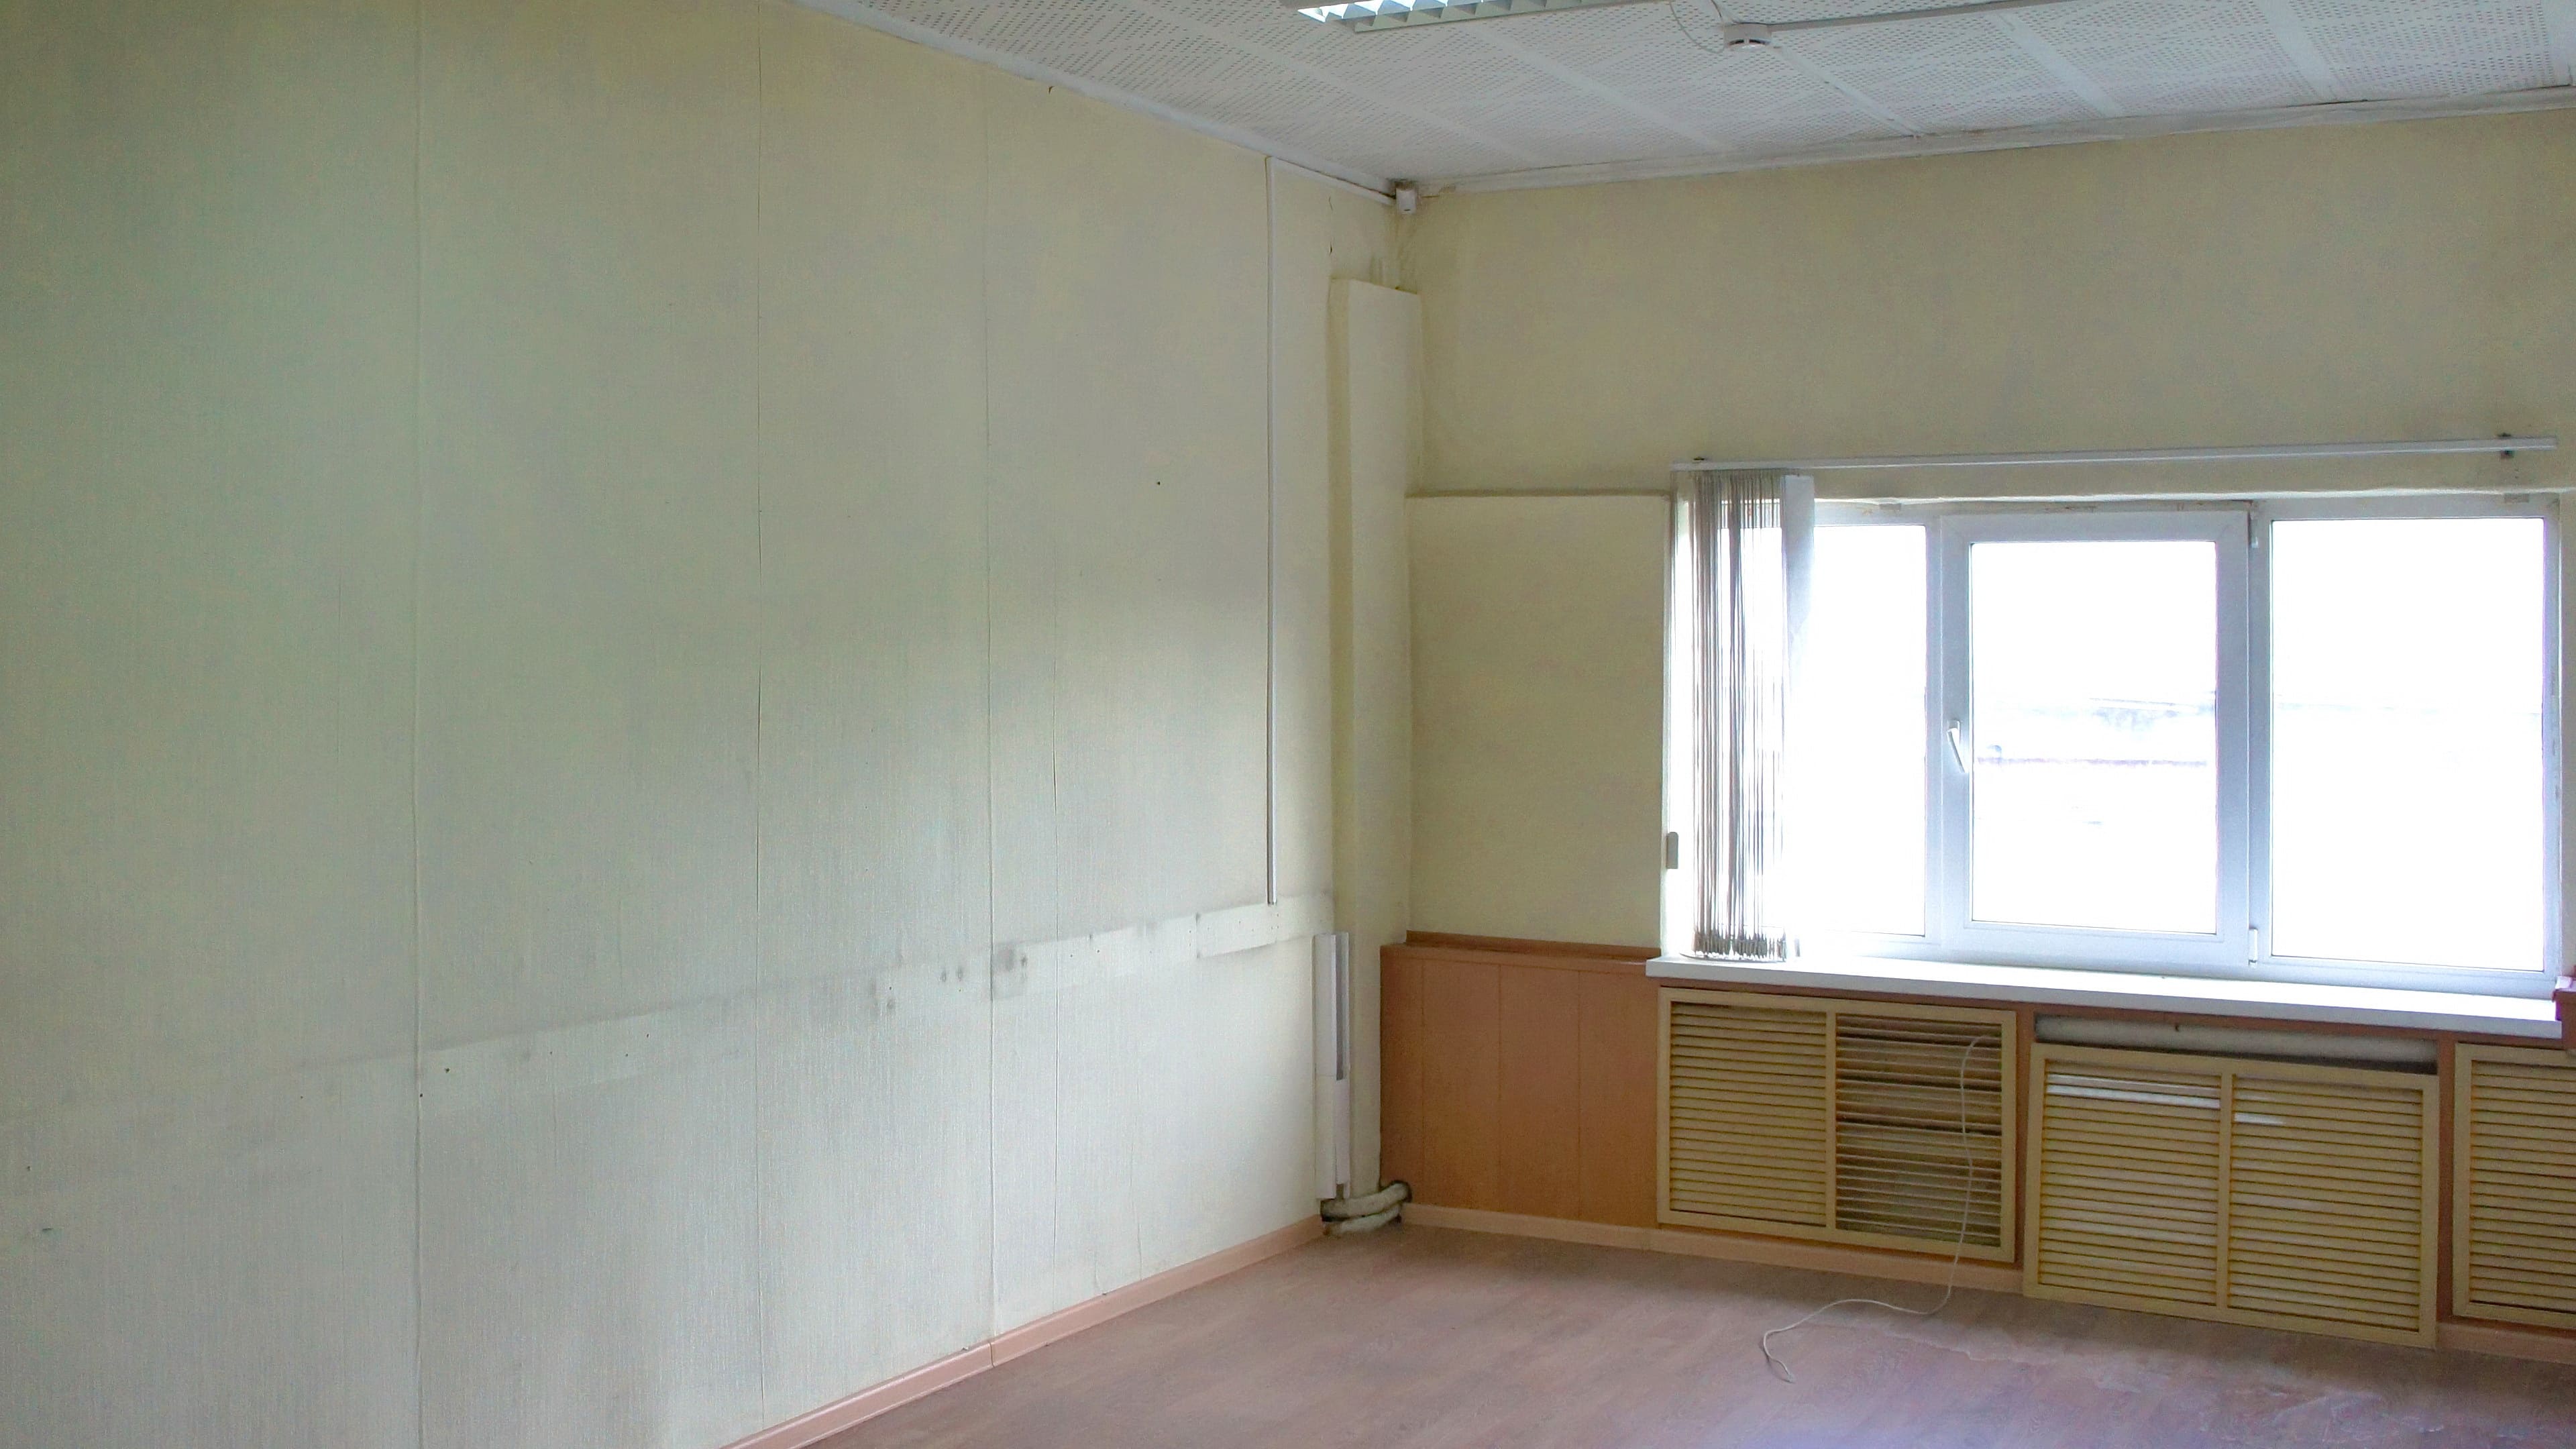 Аренда офисного помещения в Ангарске площадью 23,9 кв.м.